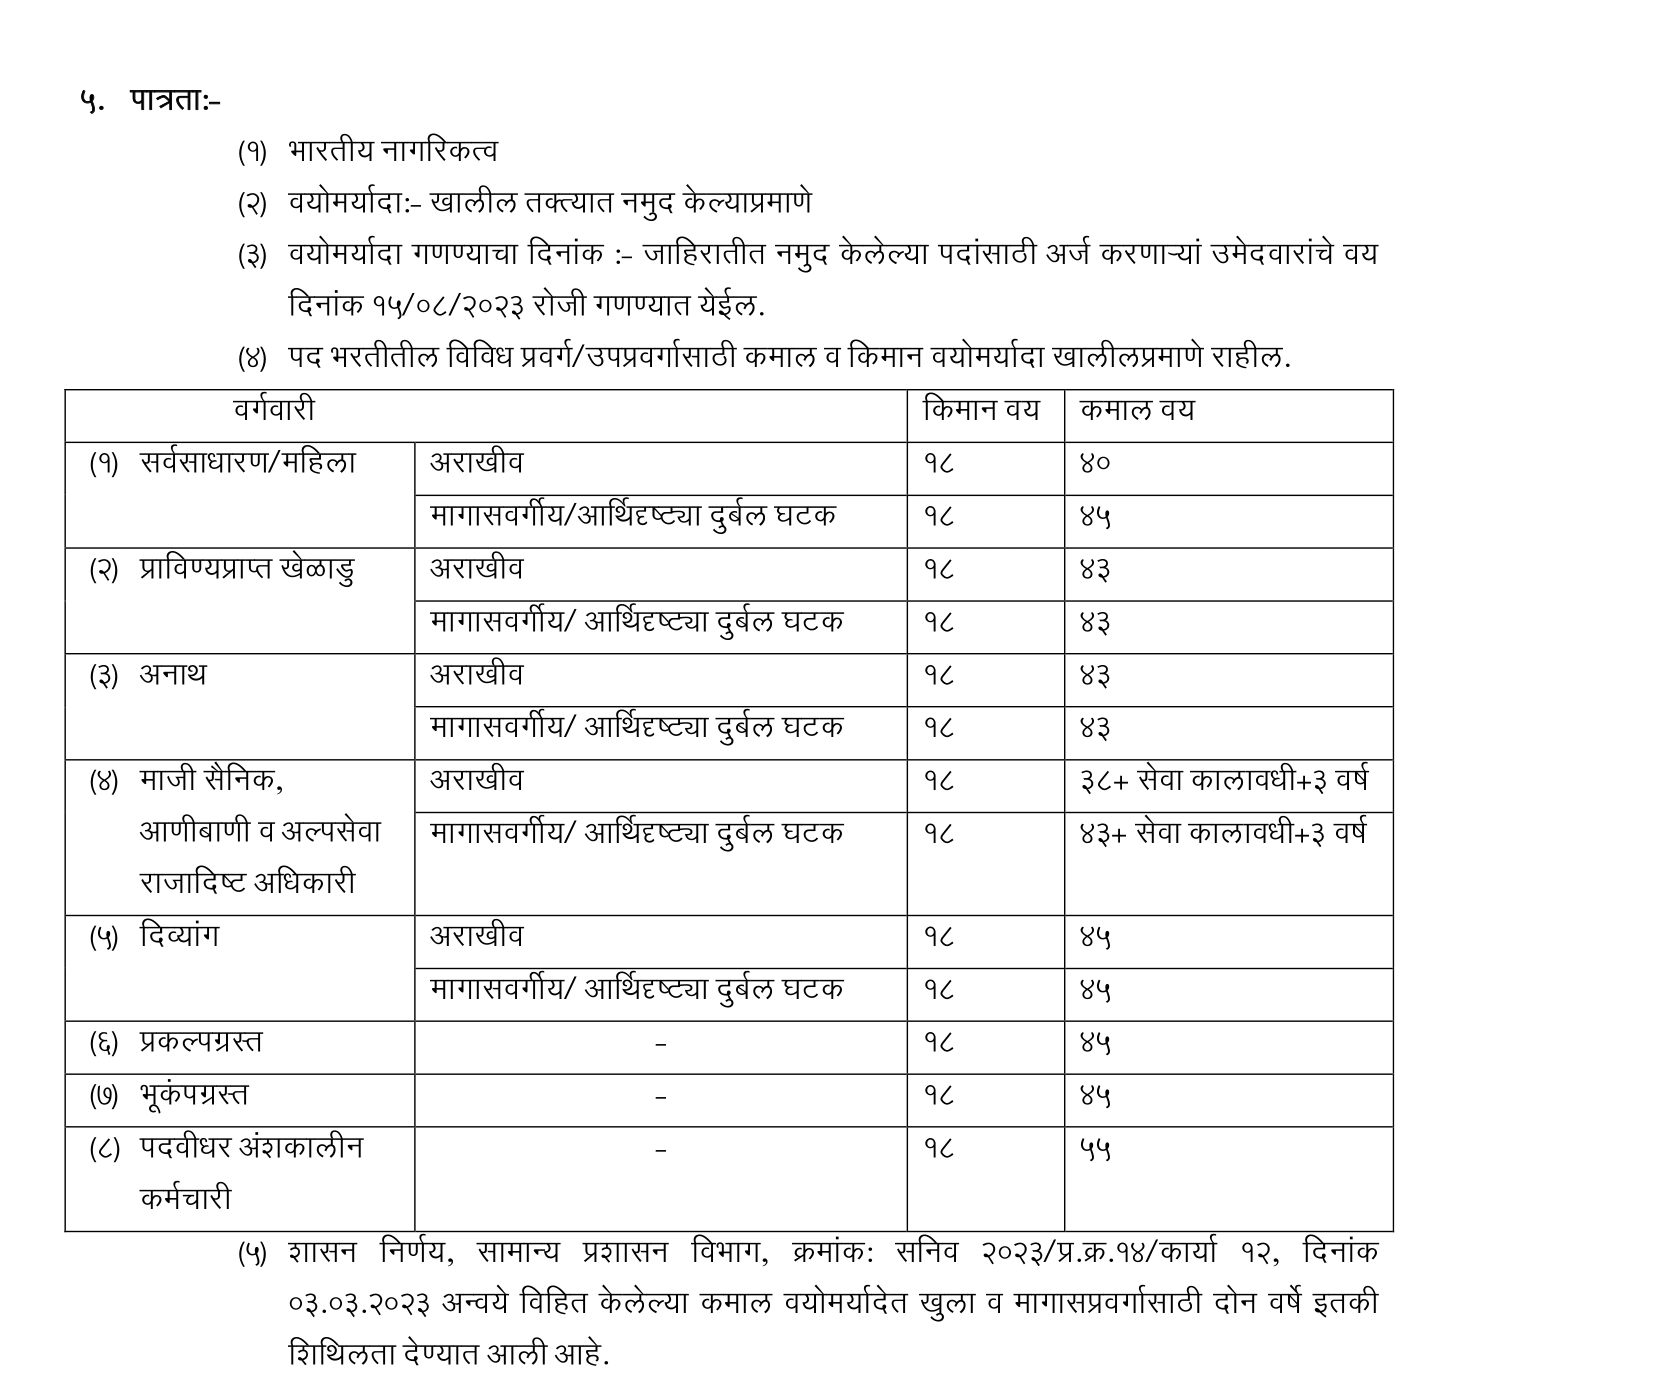 Government Jobs in Maharashtra